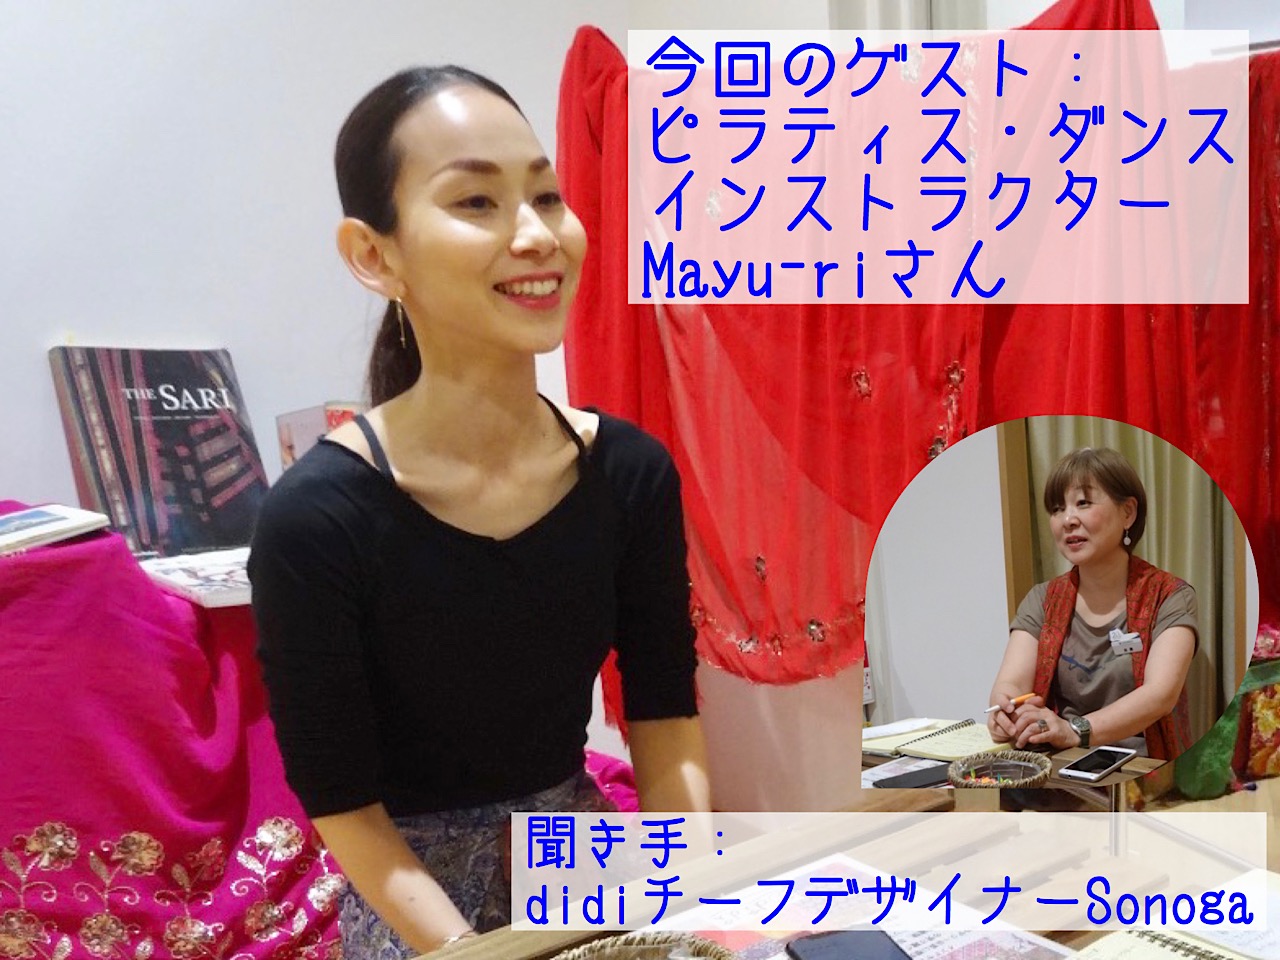 didi Sonogaのエシカル対談・その３ ピラティス・ダンスインストラクター Mayu-riさん